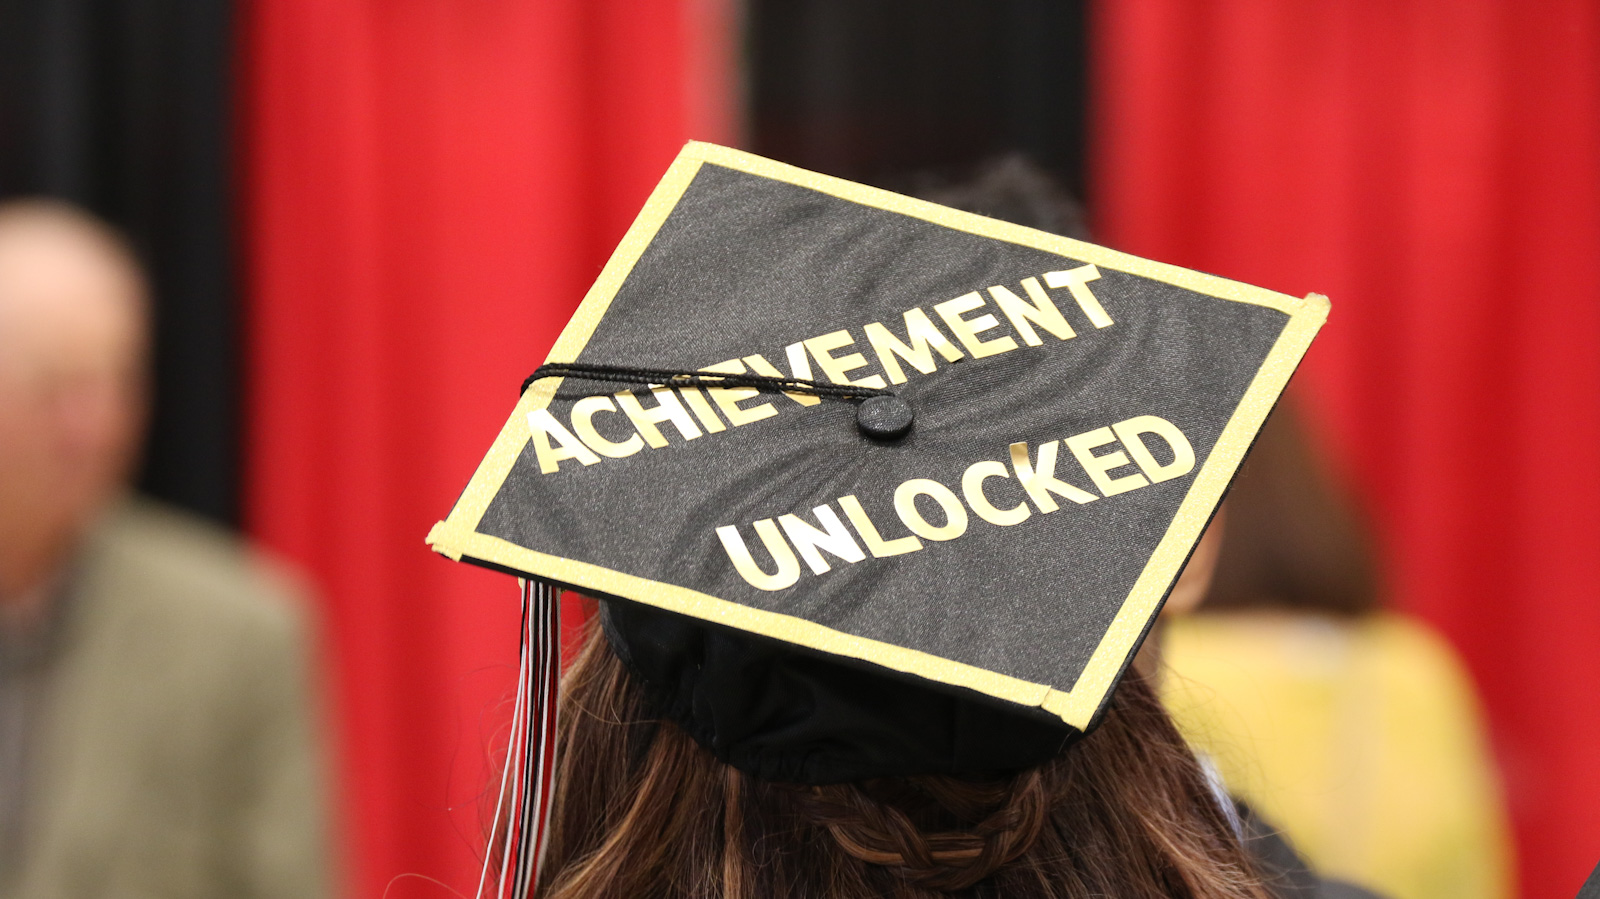 A graduate's cap reads "Achievement Unlocked"